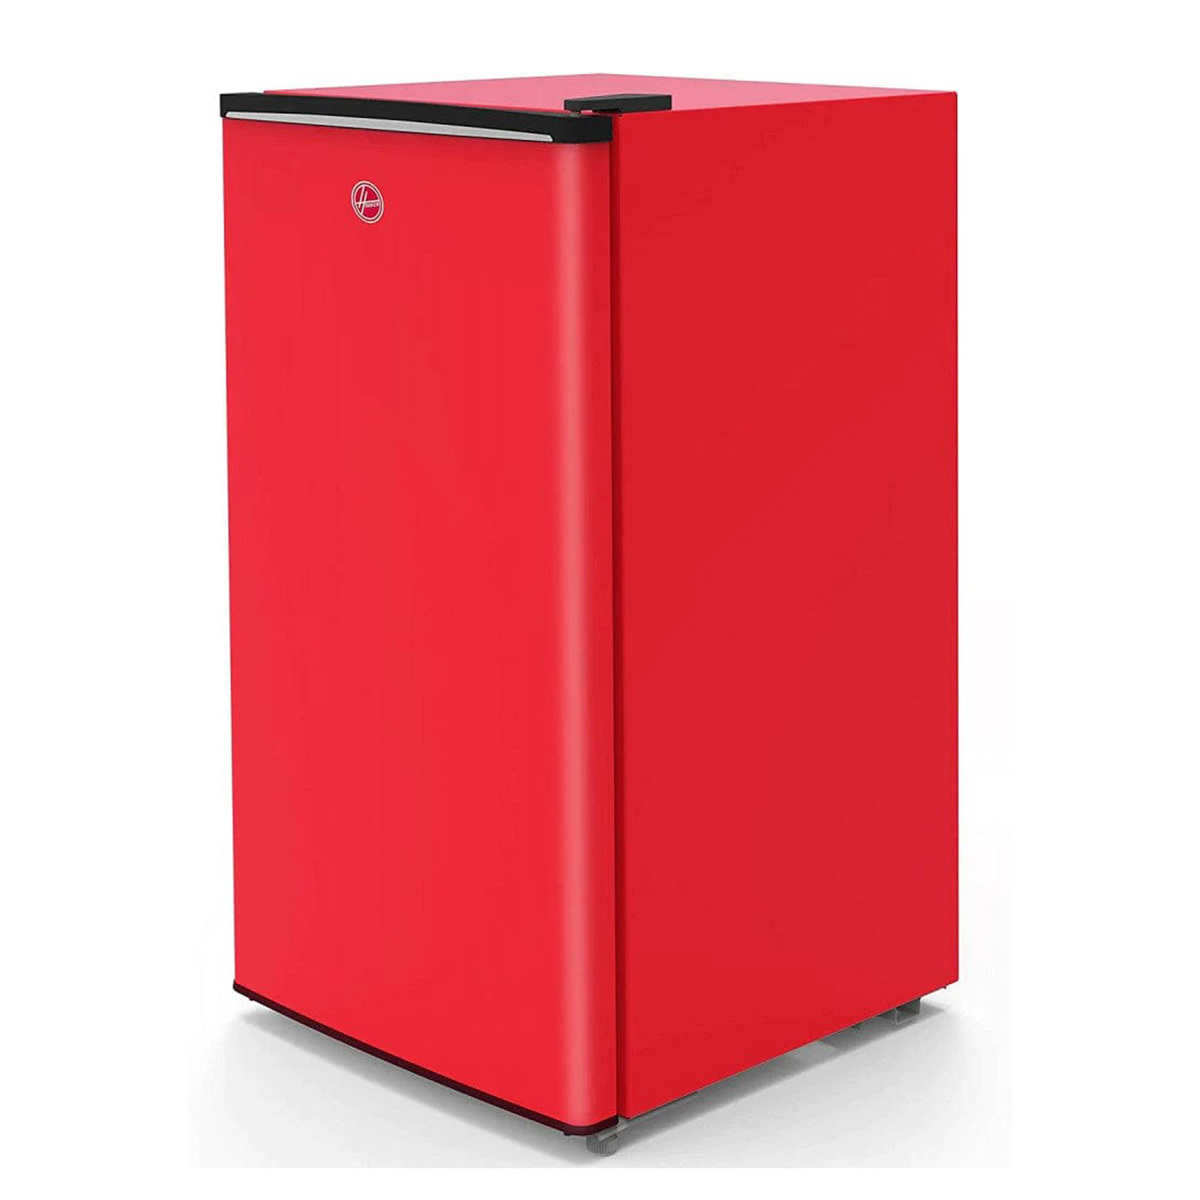 Hoover Single Door Refrigerator, 118 L, Red, HSD-K118-R